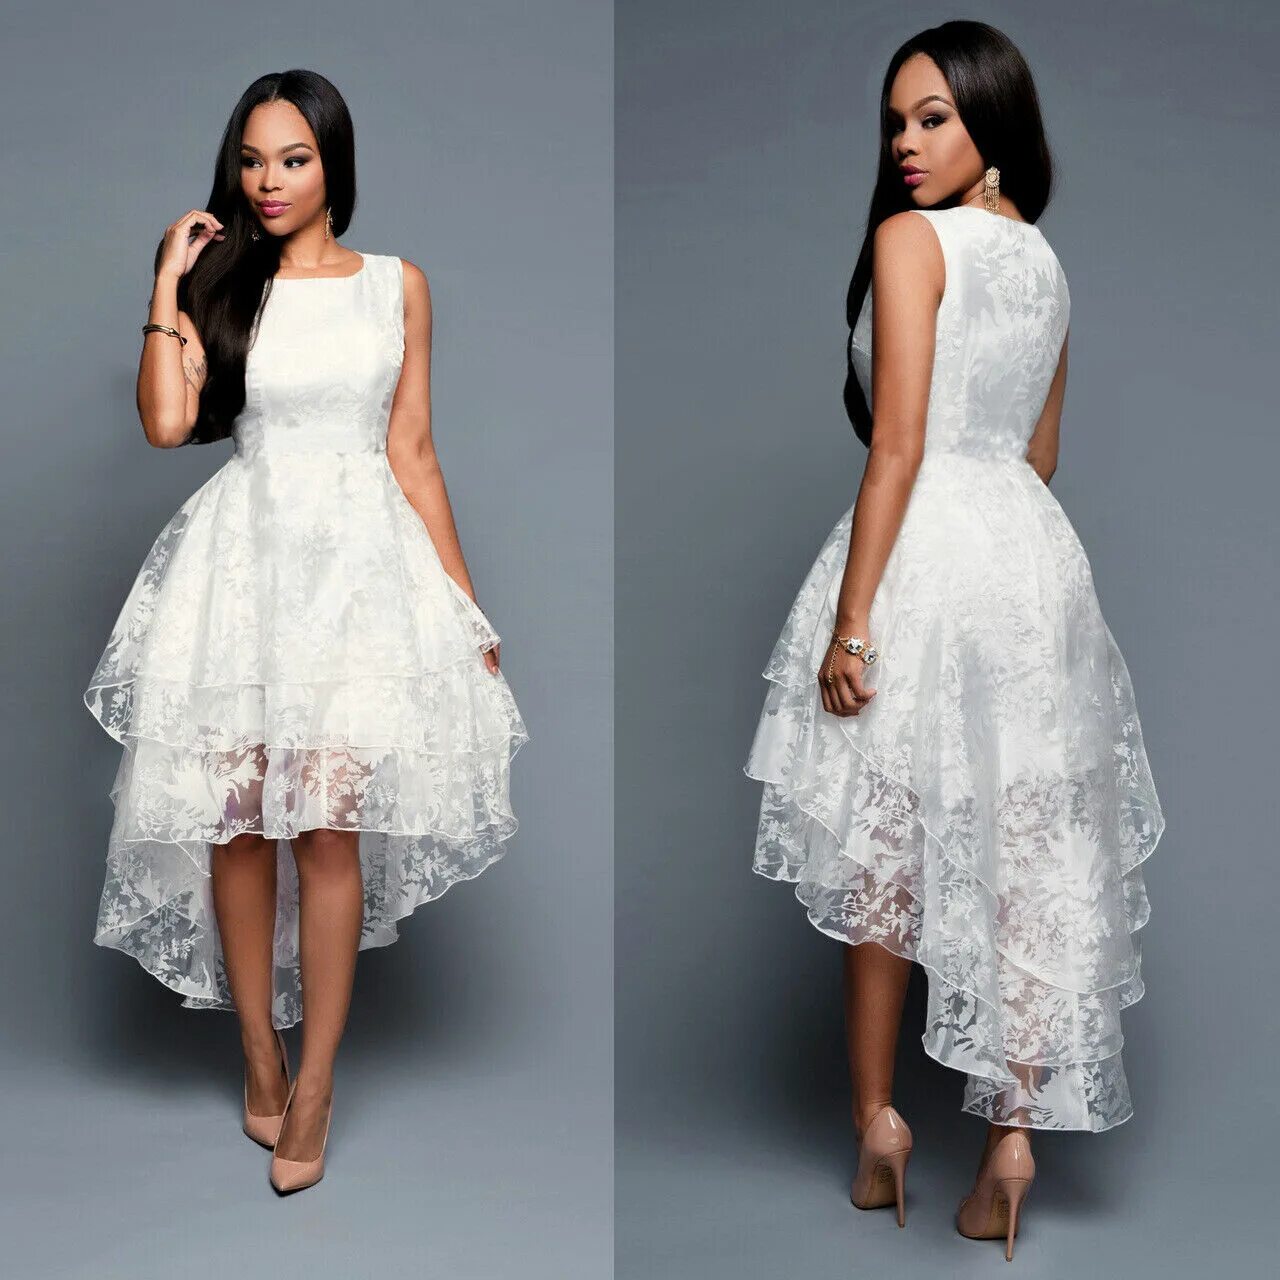 Платье на свадьбу. Белое платье. Короткое платье на свадьбу. Белое короткое платье на выпускной.